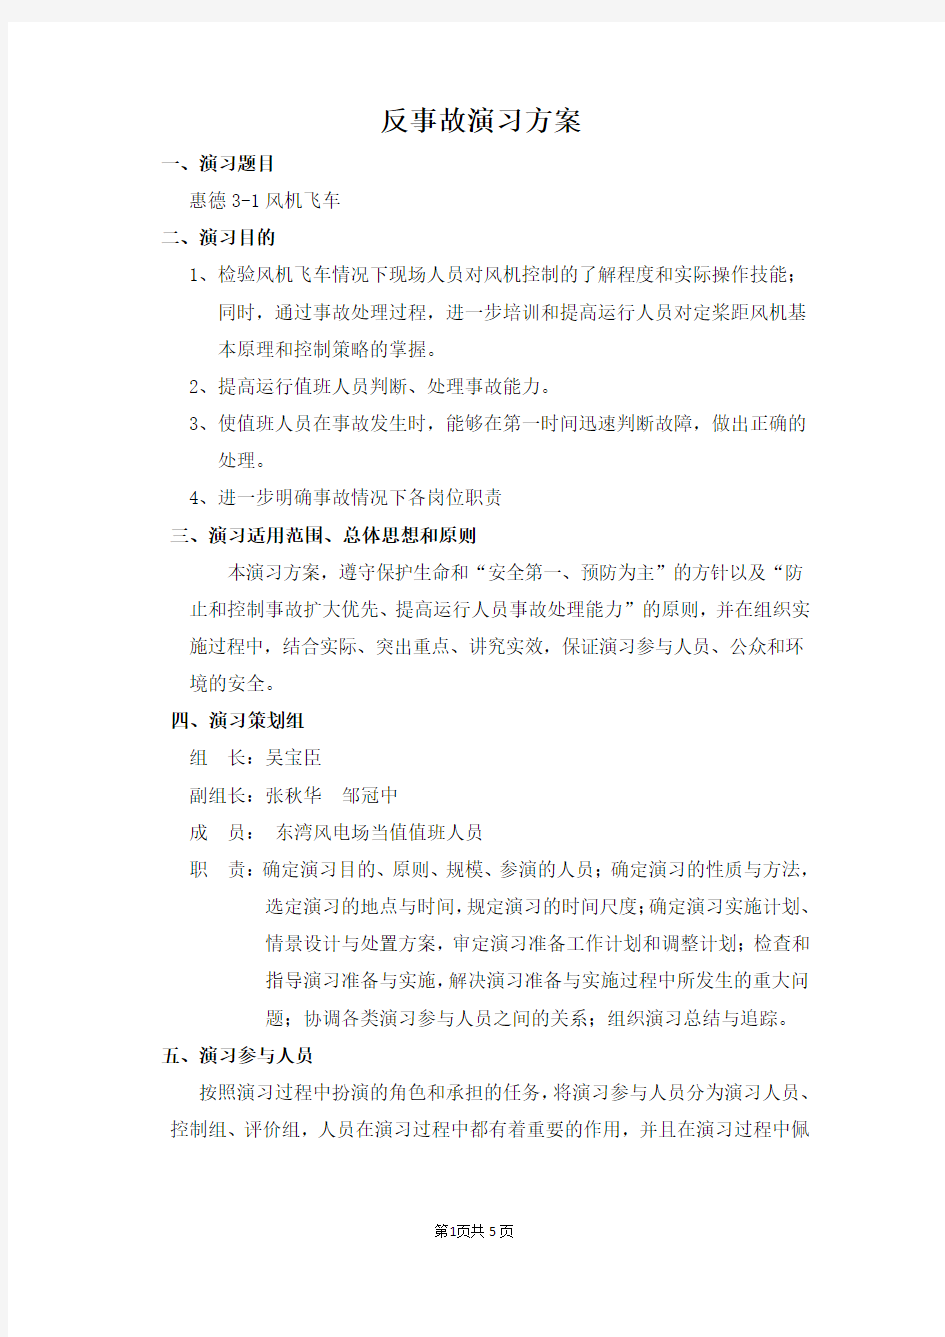 2012年度东湾风电场反事故演练方案(2012.08.22)